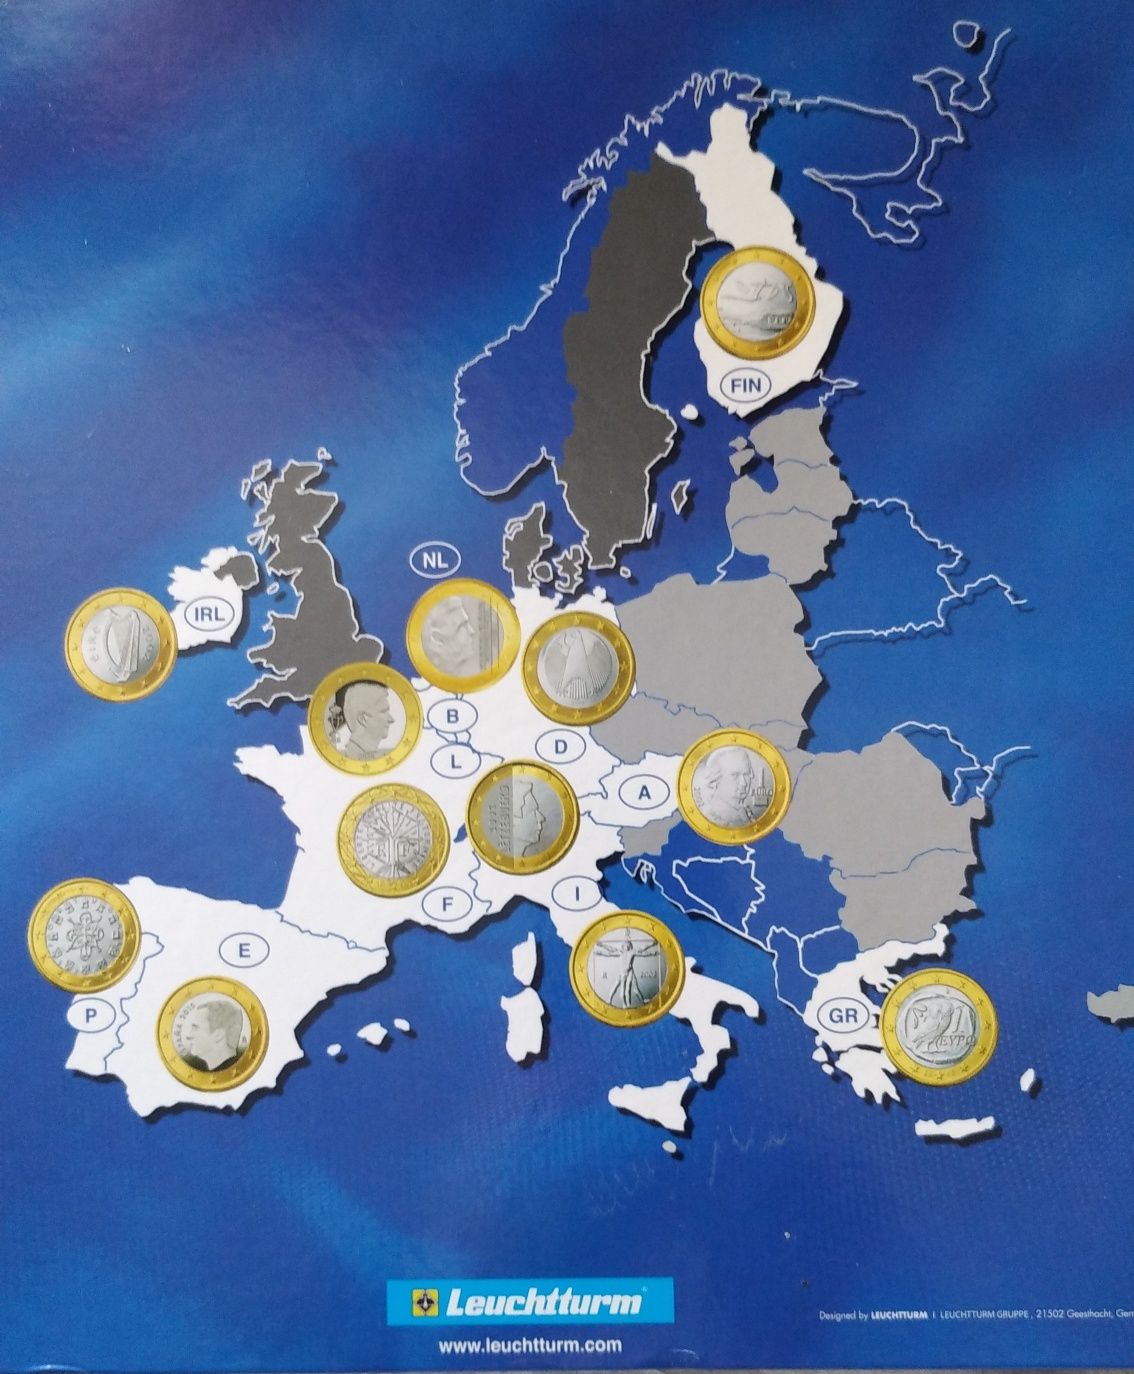 Коллекция евро монет